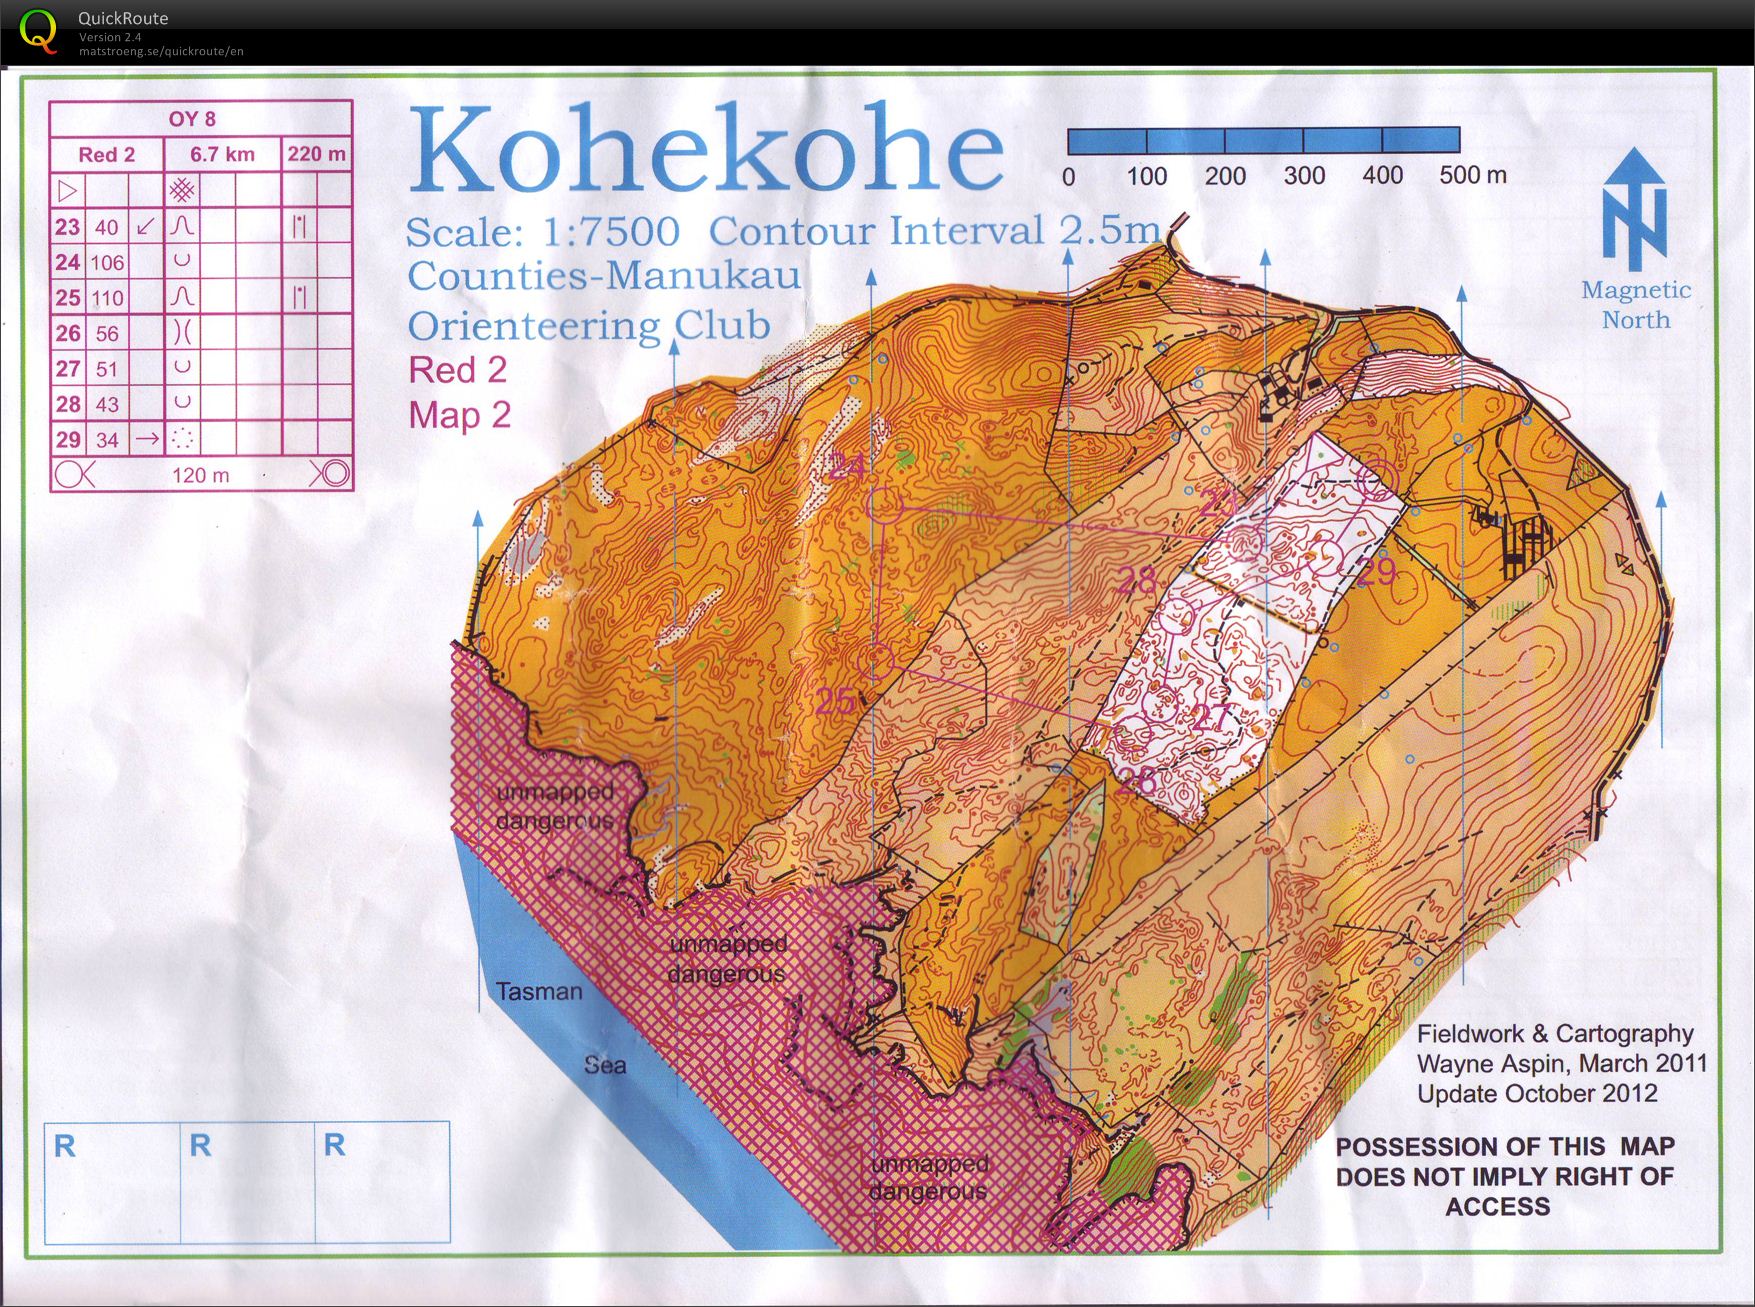 OY8 Kohekohe (part 2) (27.10.2012)